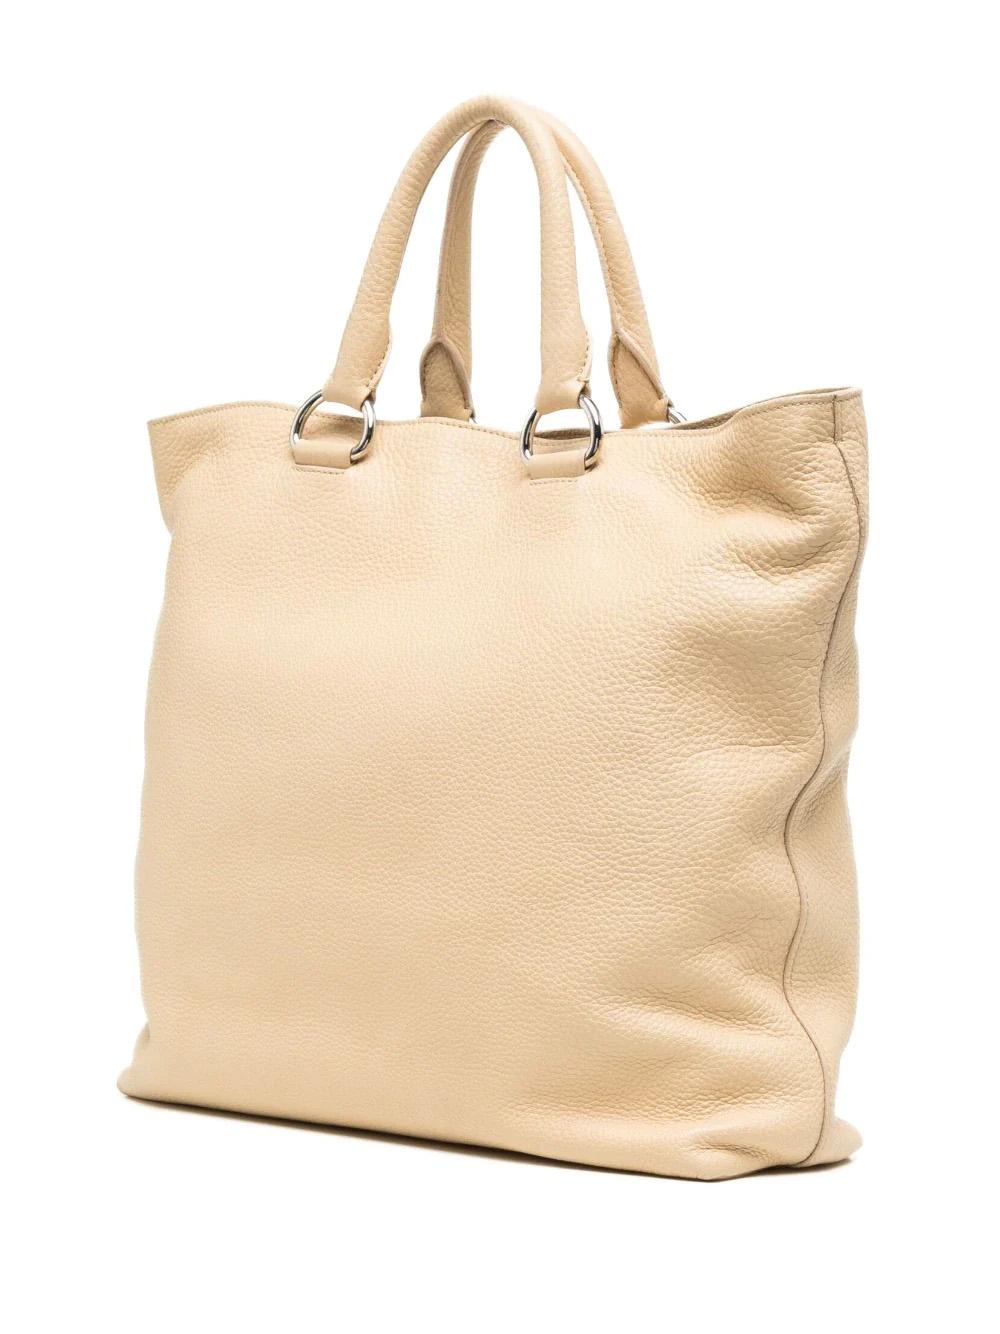 Prada Vitello Daino Leather Tote Bag In Good Condition For Sale In London, GB